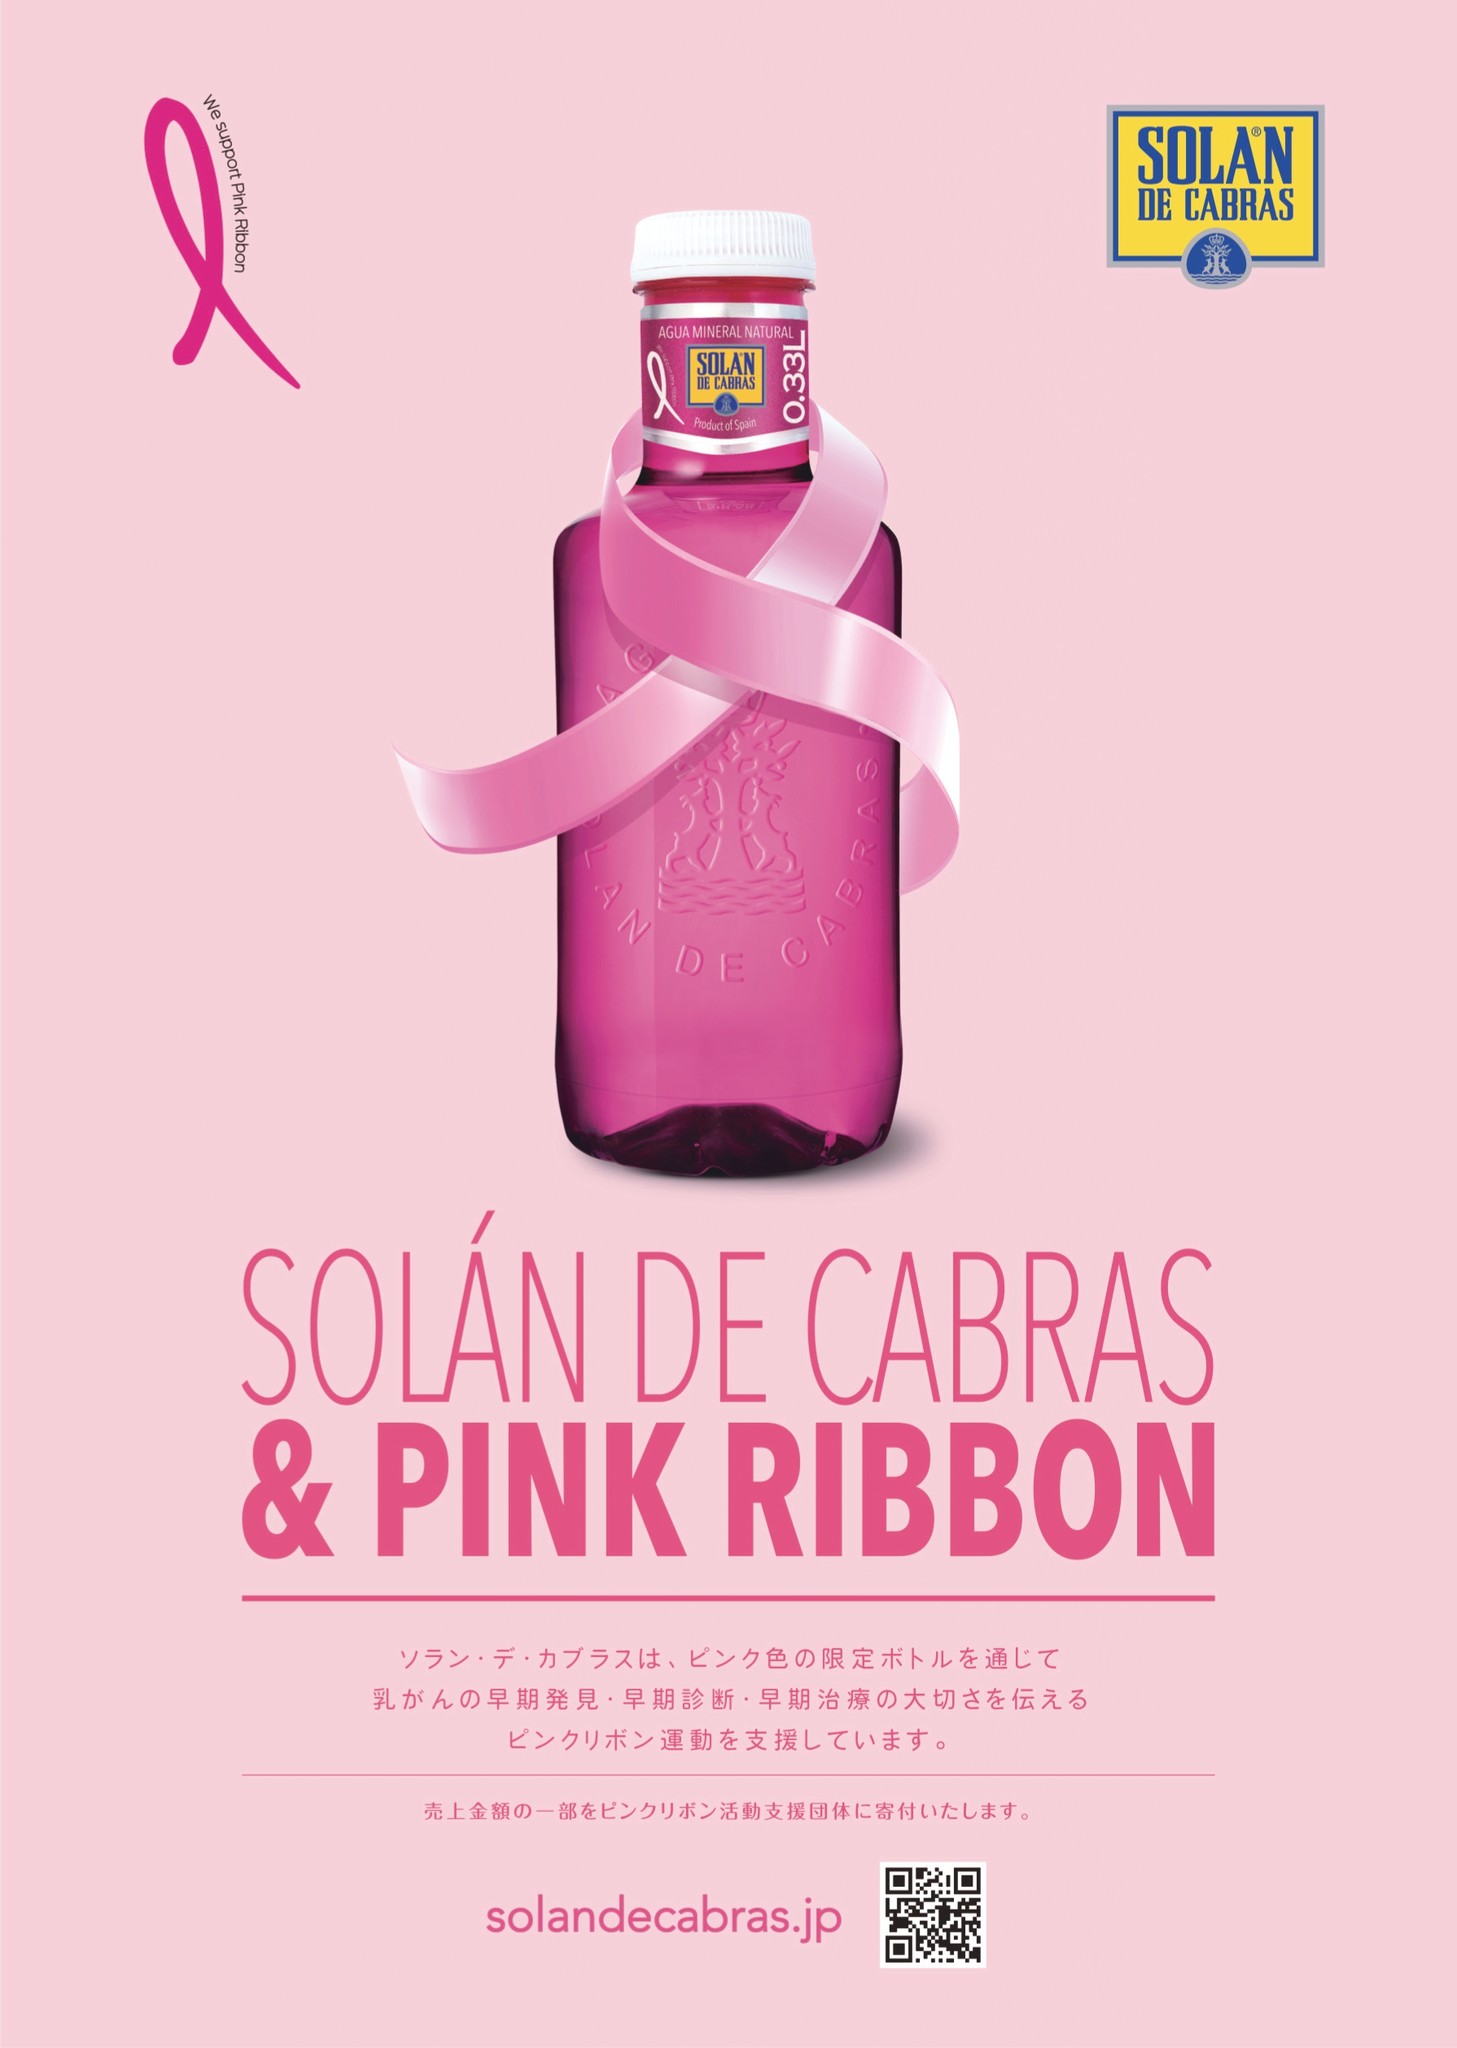 スペインで愛され続ける水 ソラン デ カブラス 限定ピンク色ボトル 年10月1日 木 より販売開始 スリーボンド貿易株式会社のプレスリリース